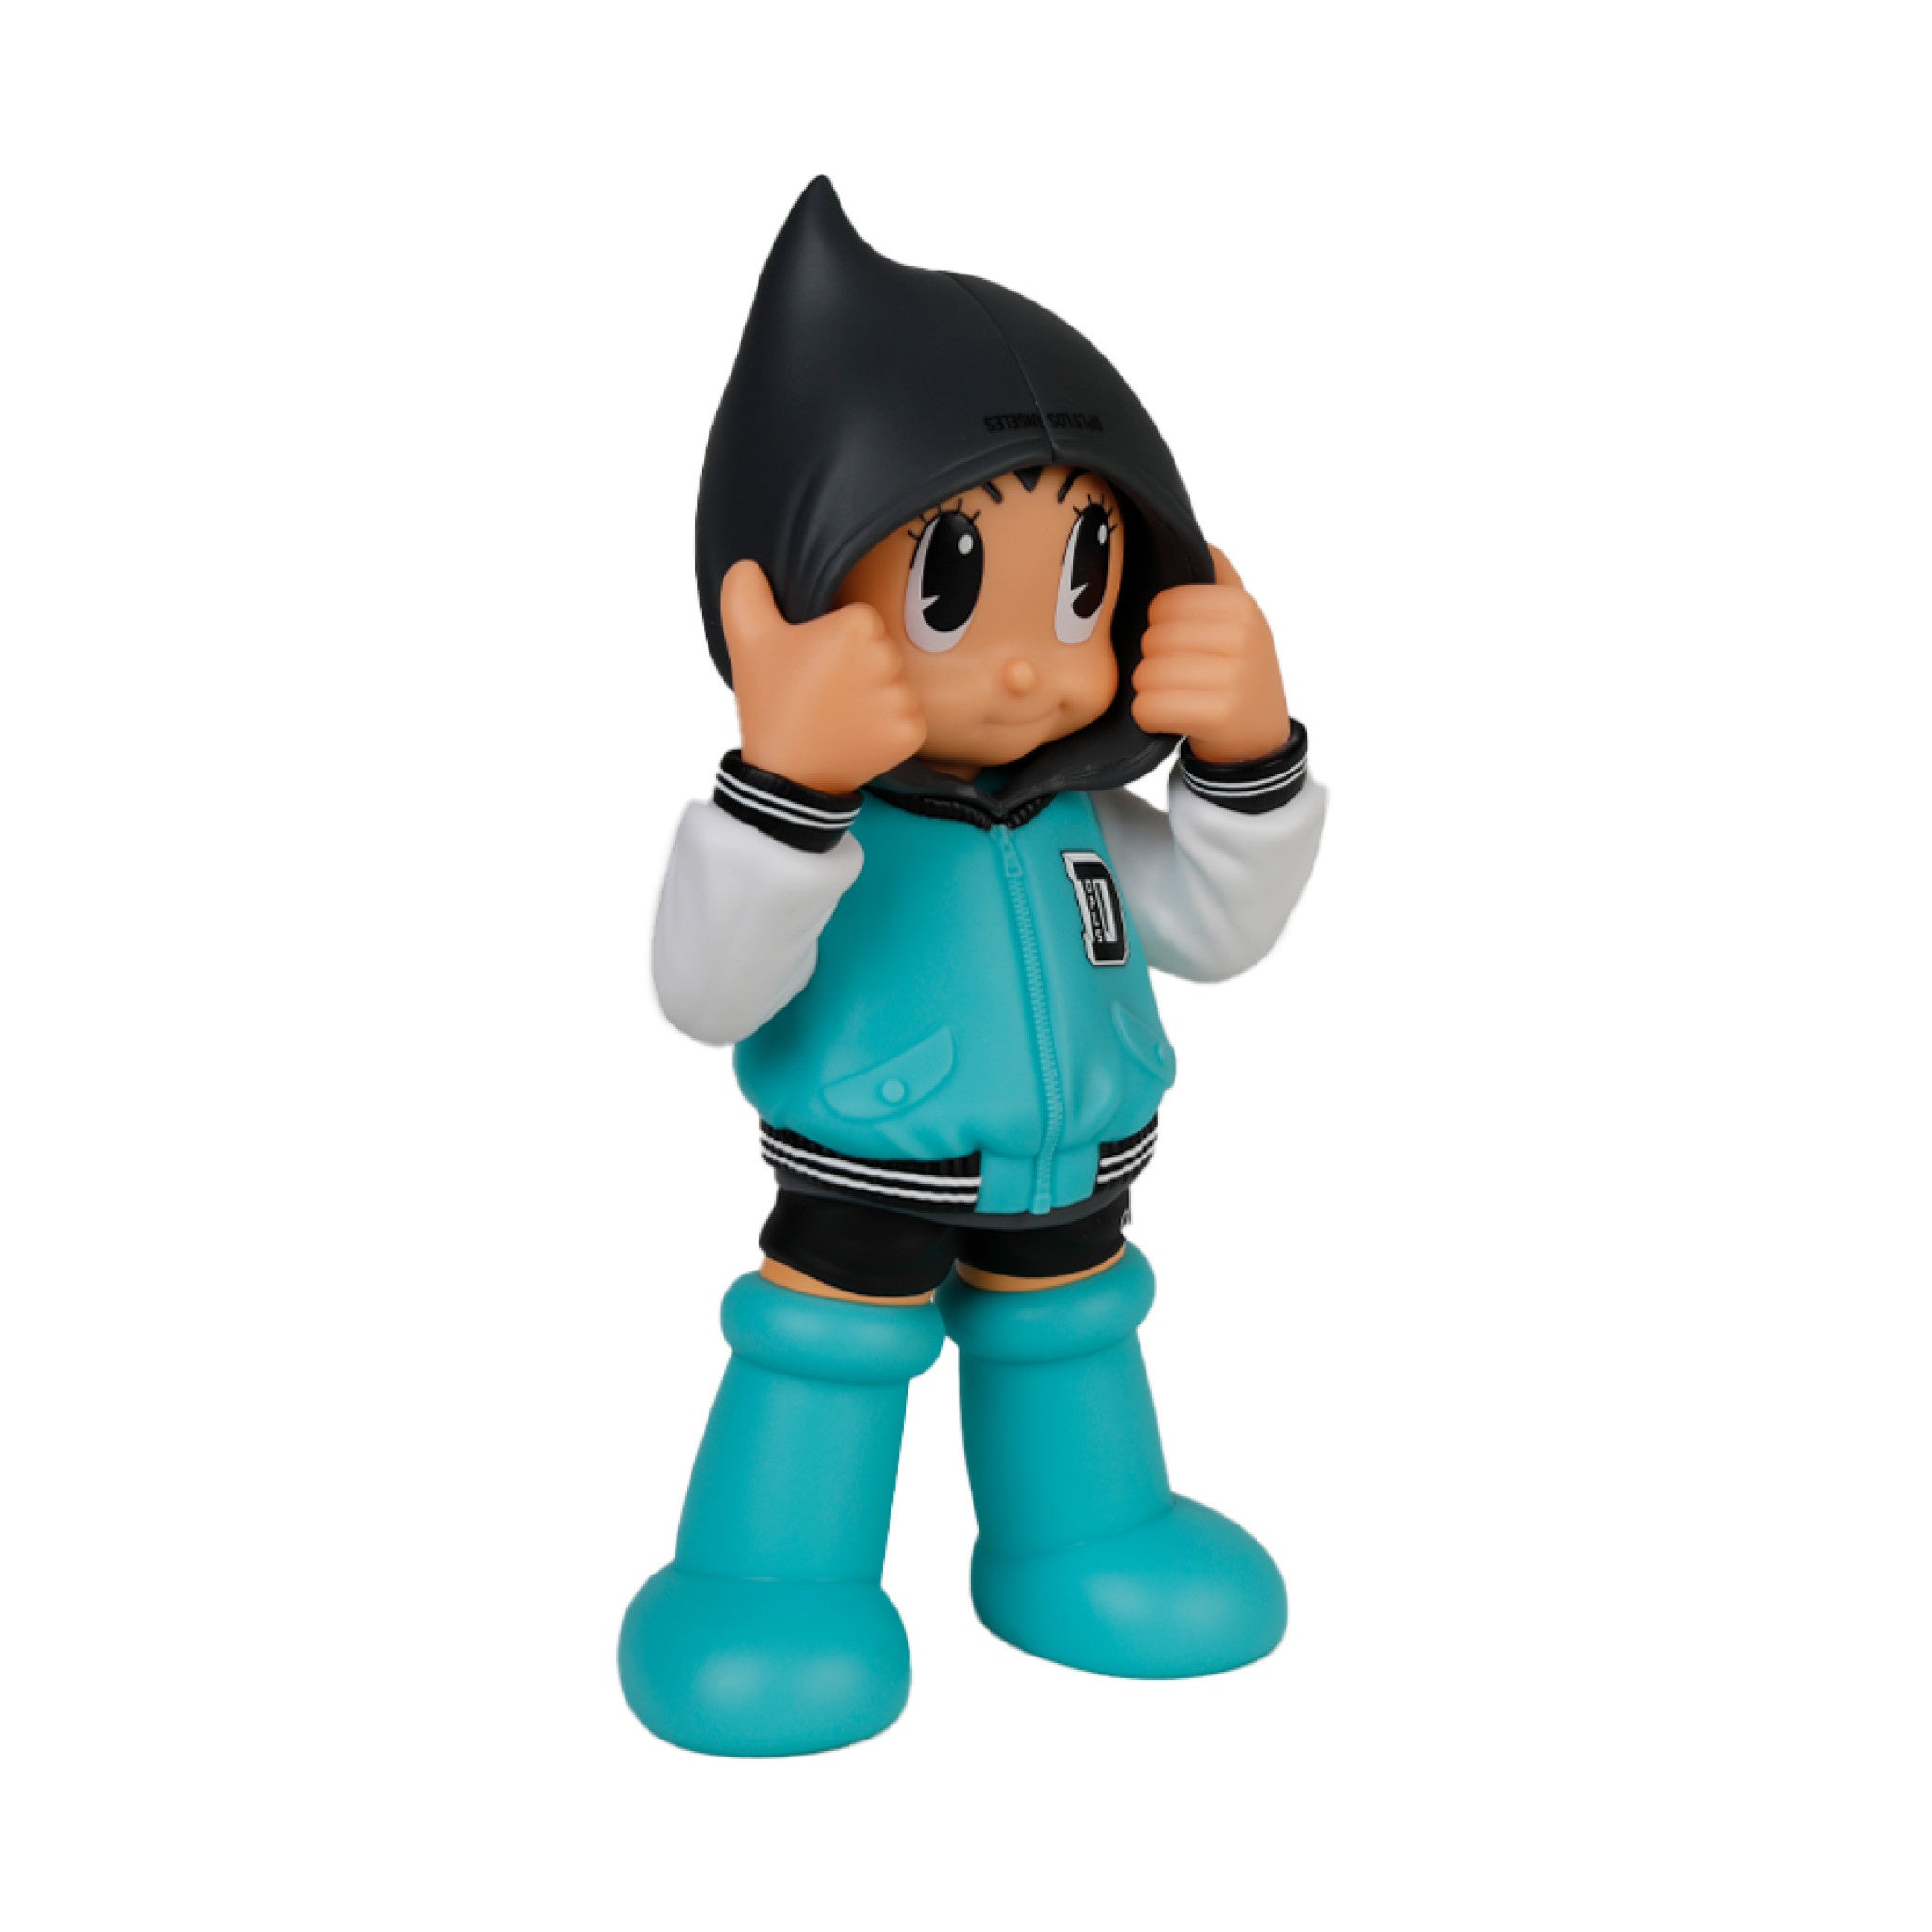 Astro Boy Hoodie DPLS Team Green 10 inch - Wynwood Walls Shop